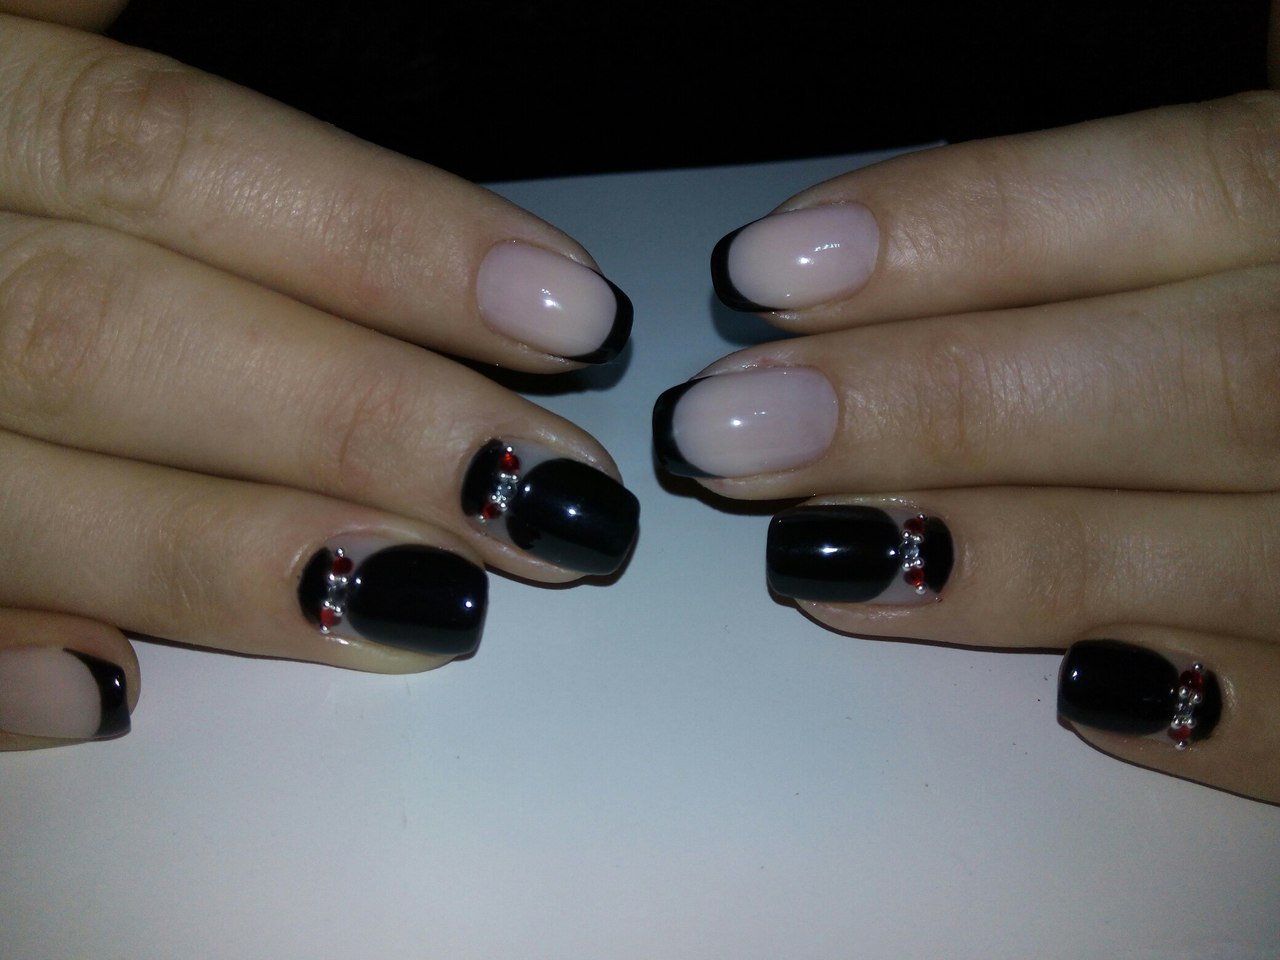 Dark short nails